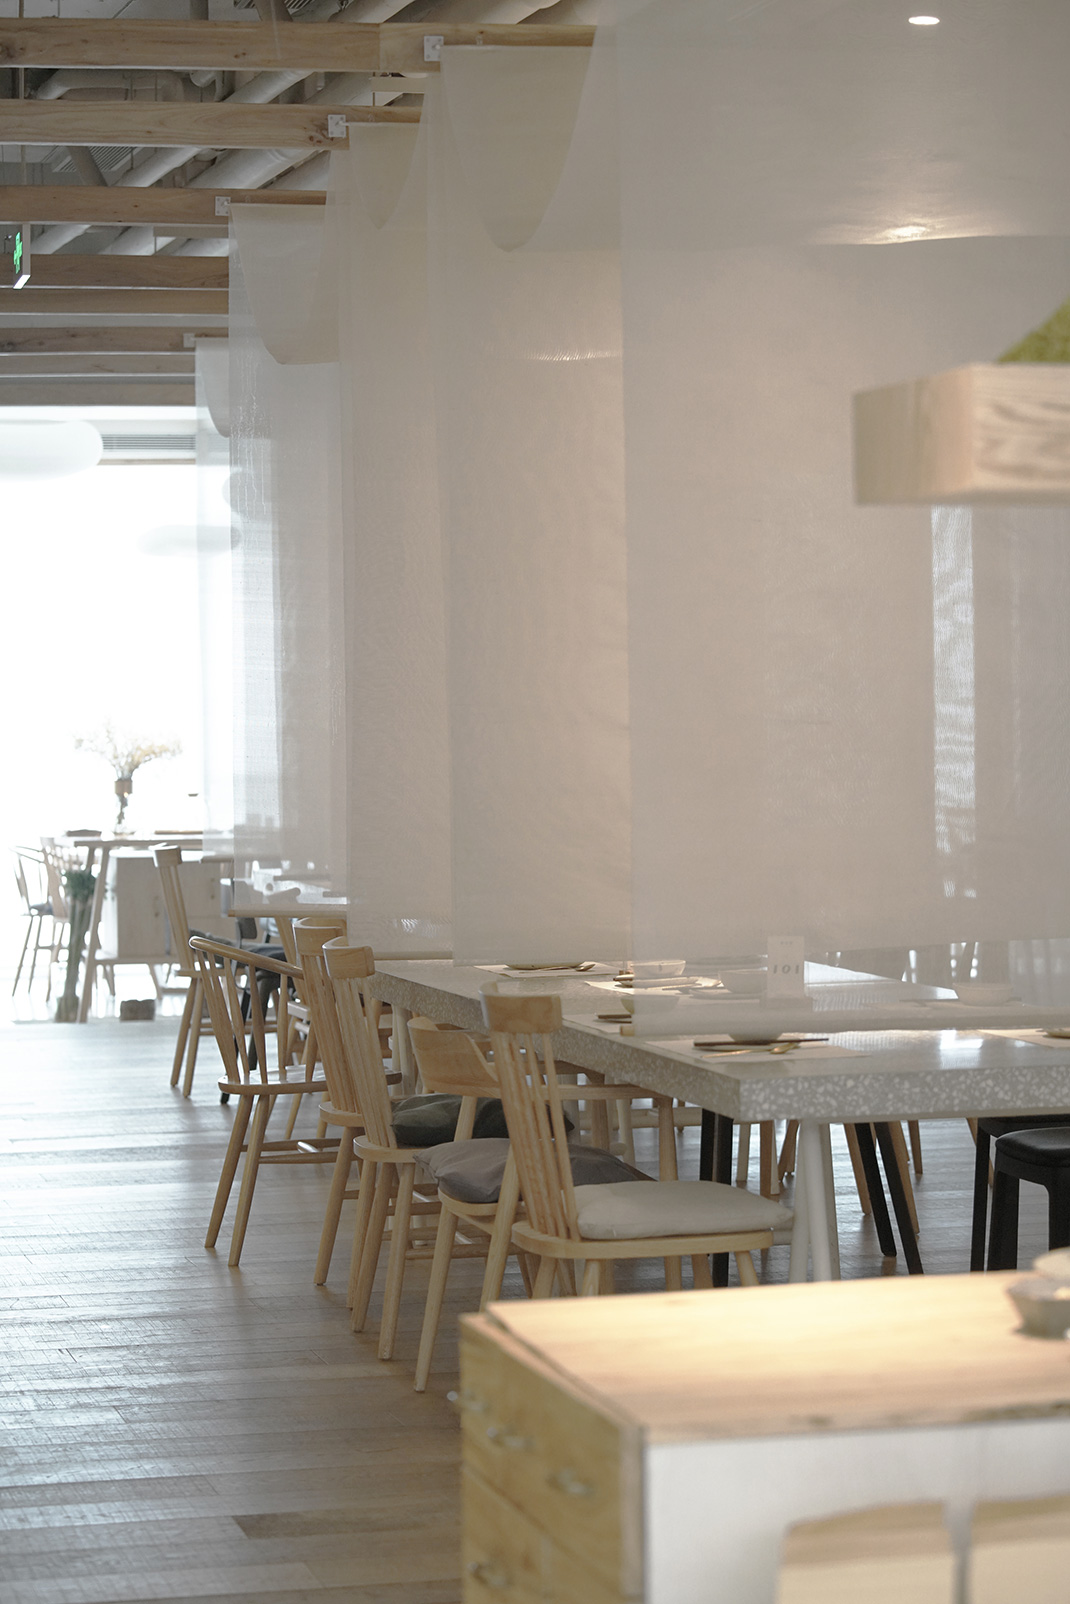 鸟屋小酒馆 北京 日式现代餐厅 湖南家常菜 现代北风格 鸟屋 餐厅LOGO VI设计 空间设计 视觉餐饮